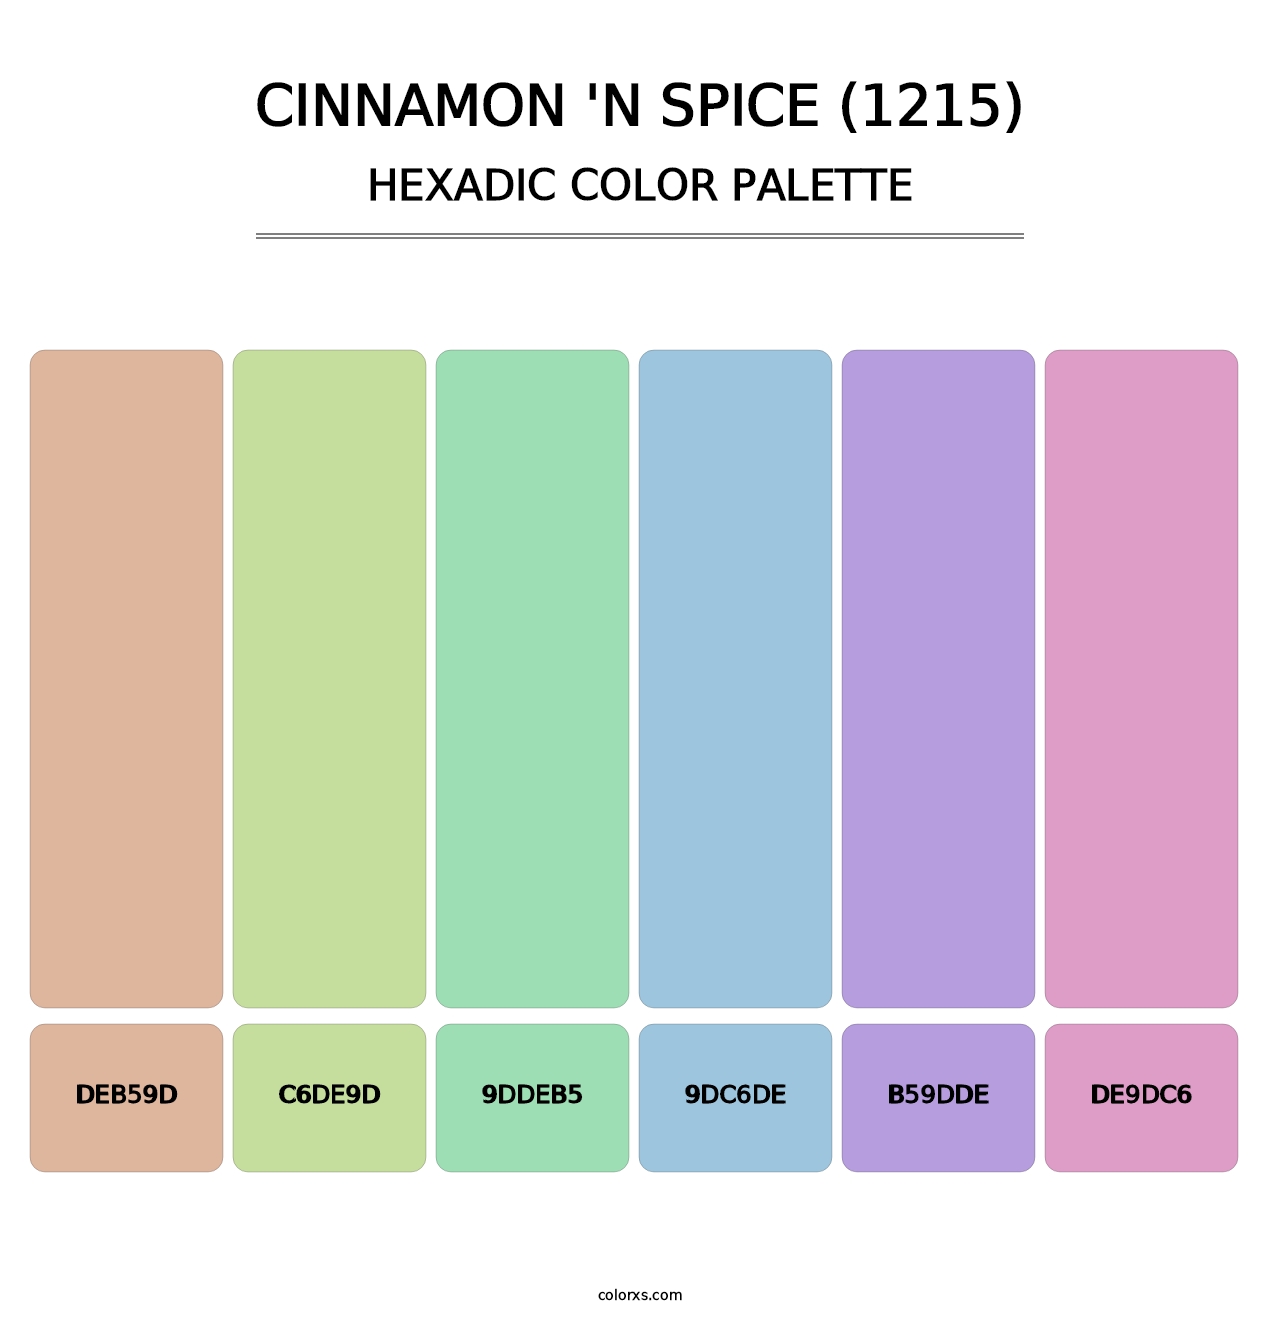 Cinnamon 'n Spice (1215) - Hexadic Color Palette